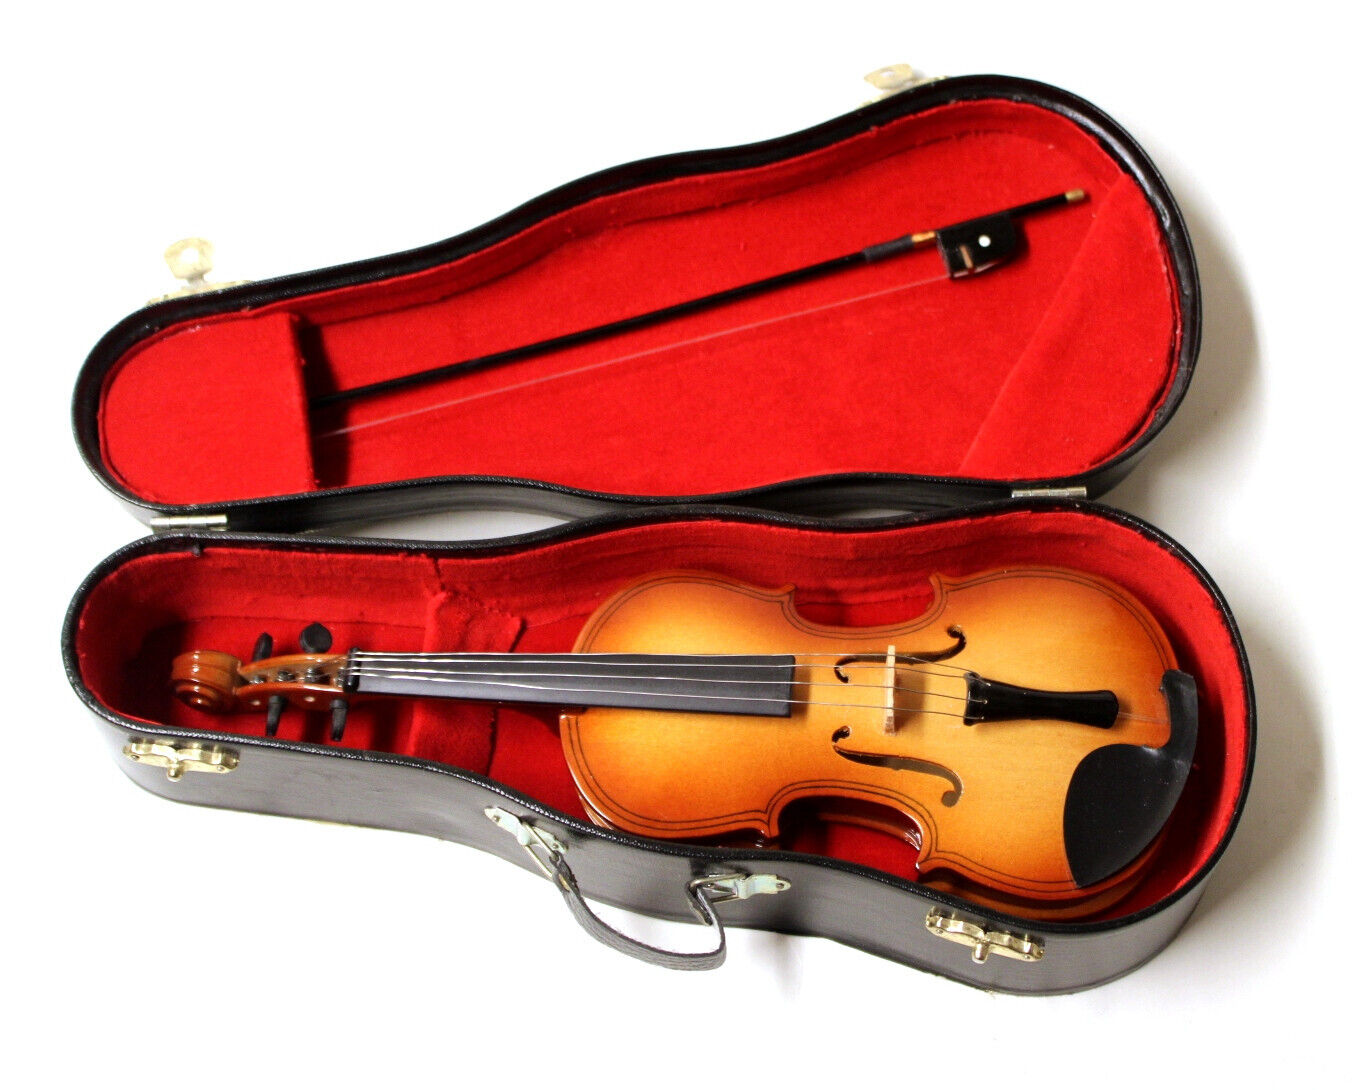 Miniature Wooden Violin Replica 9 Inch